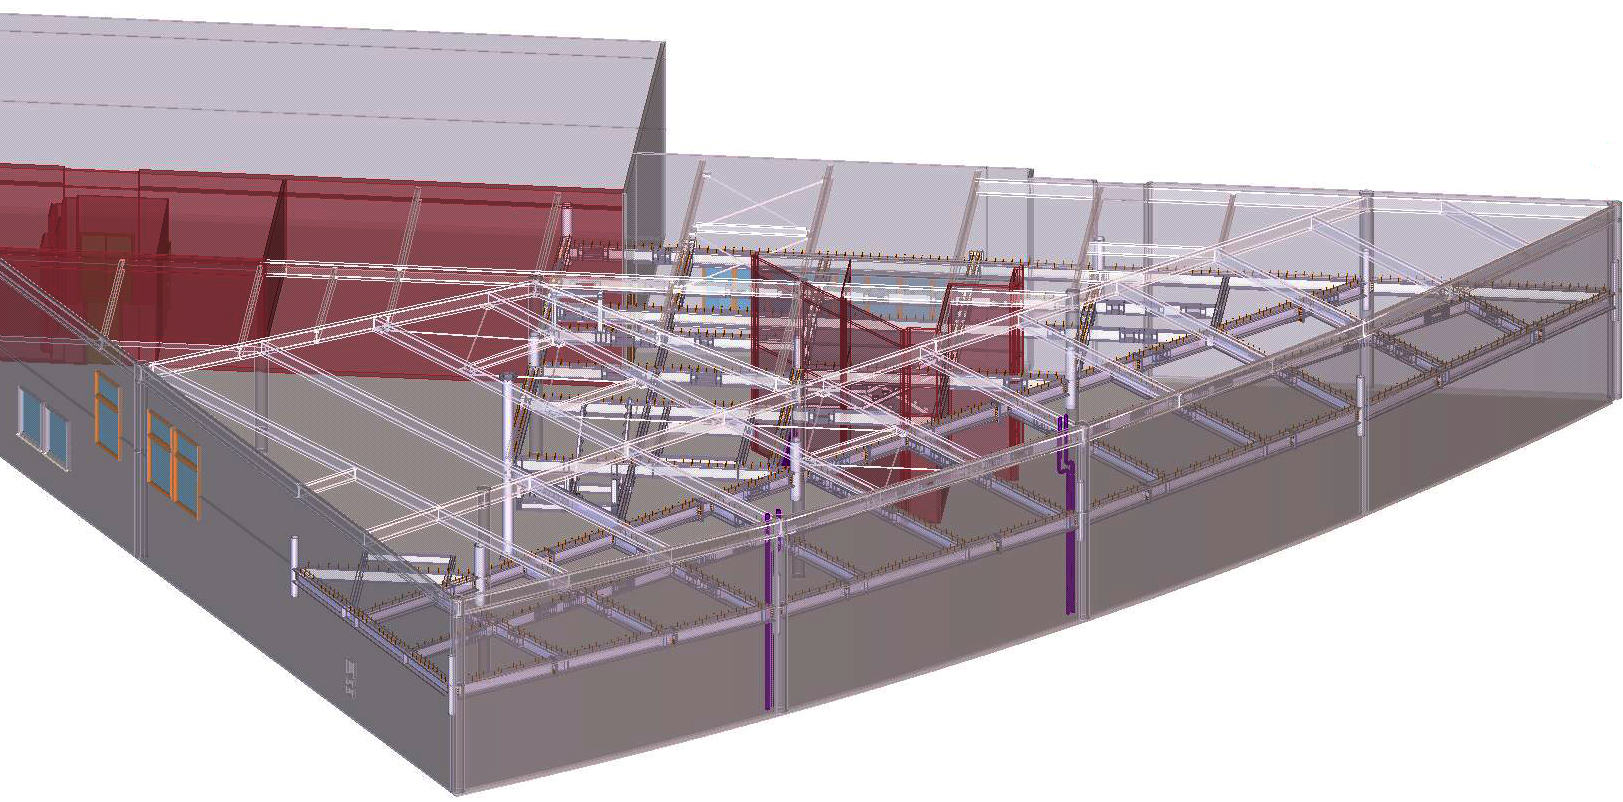 Inwentaryzacja budynku i inwentaryzacja konstrukcji za pomocą skanowania laserowego.